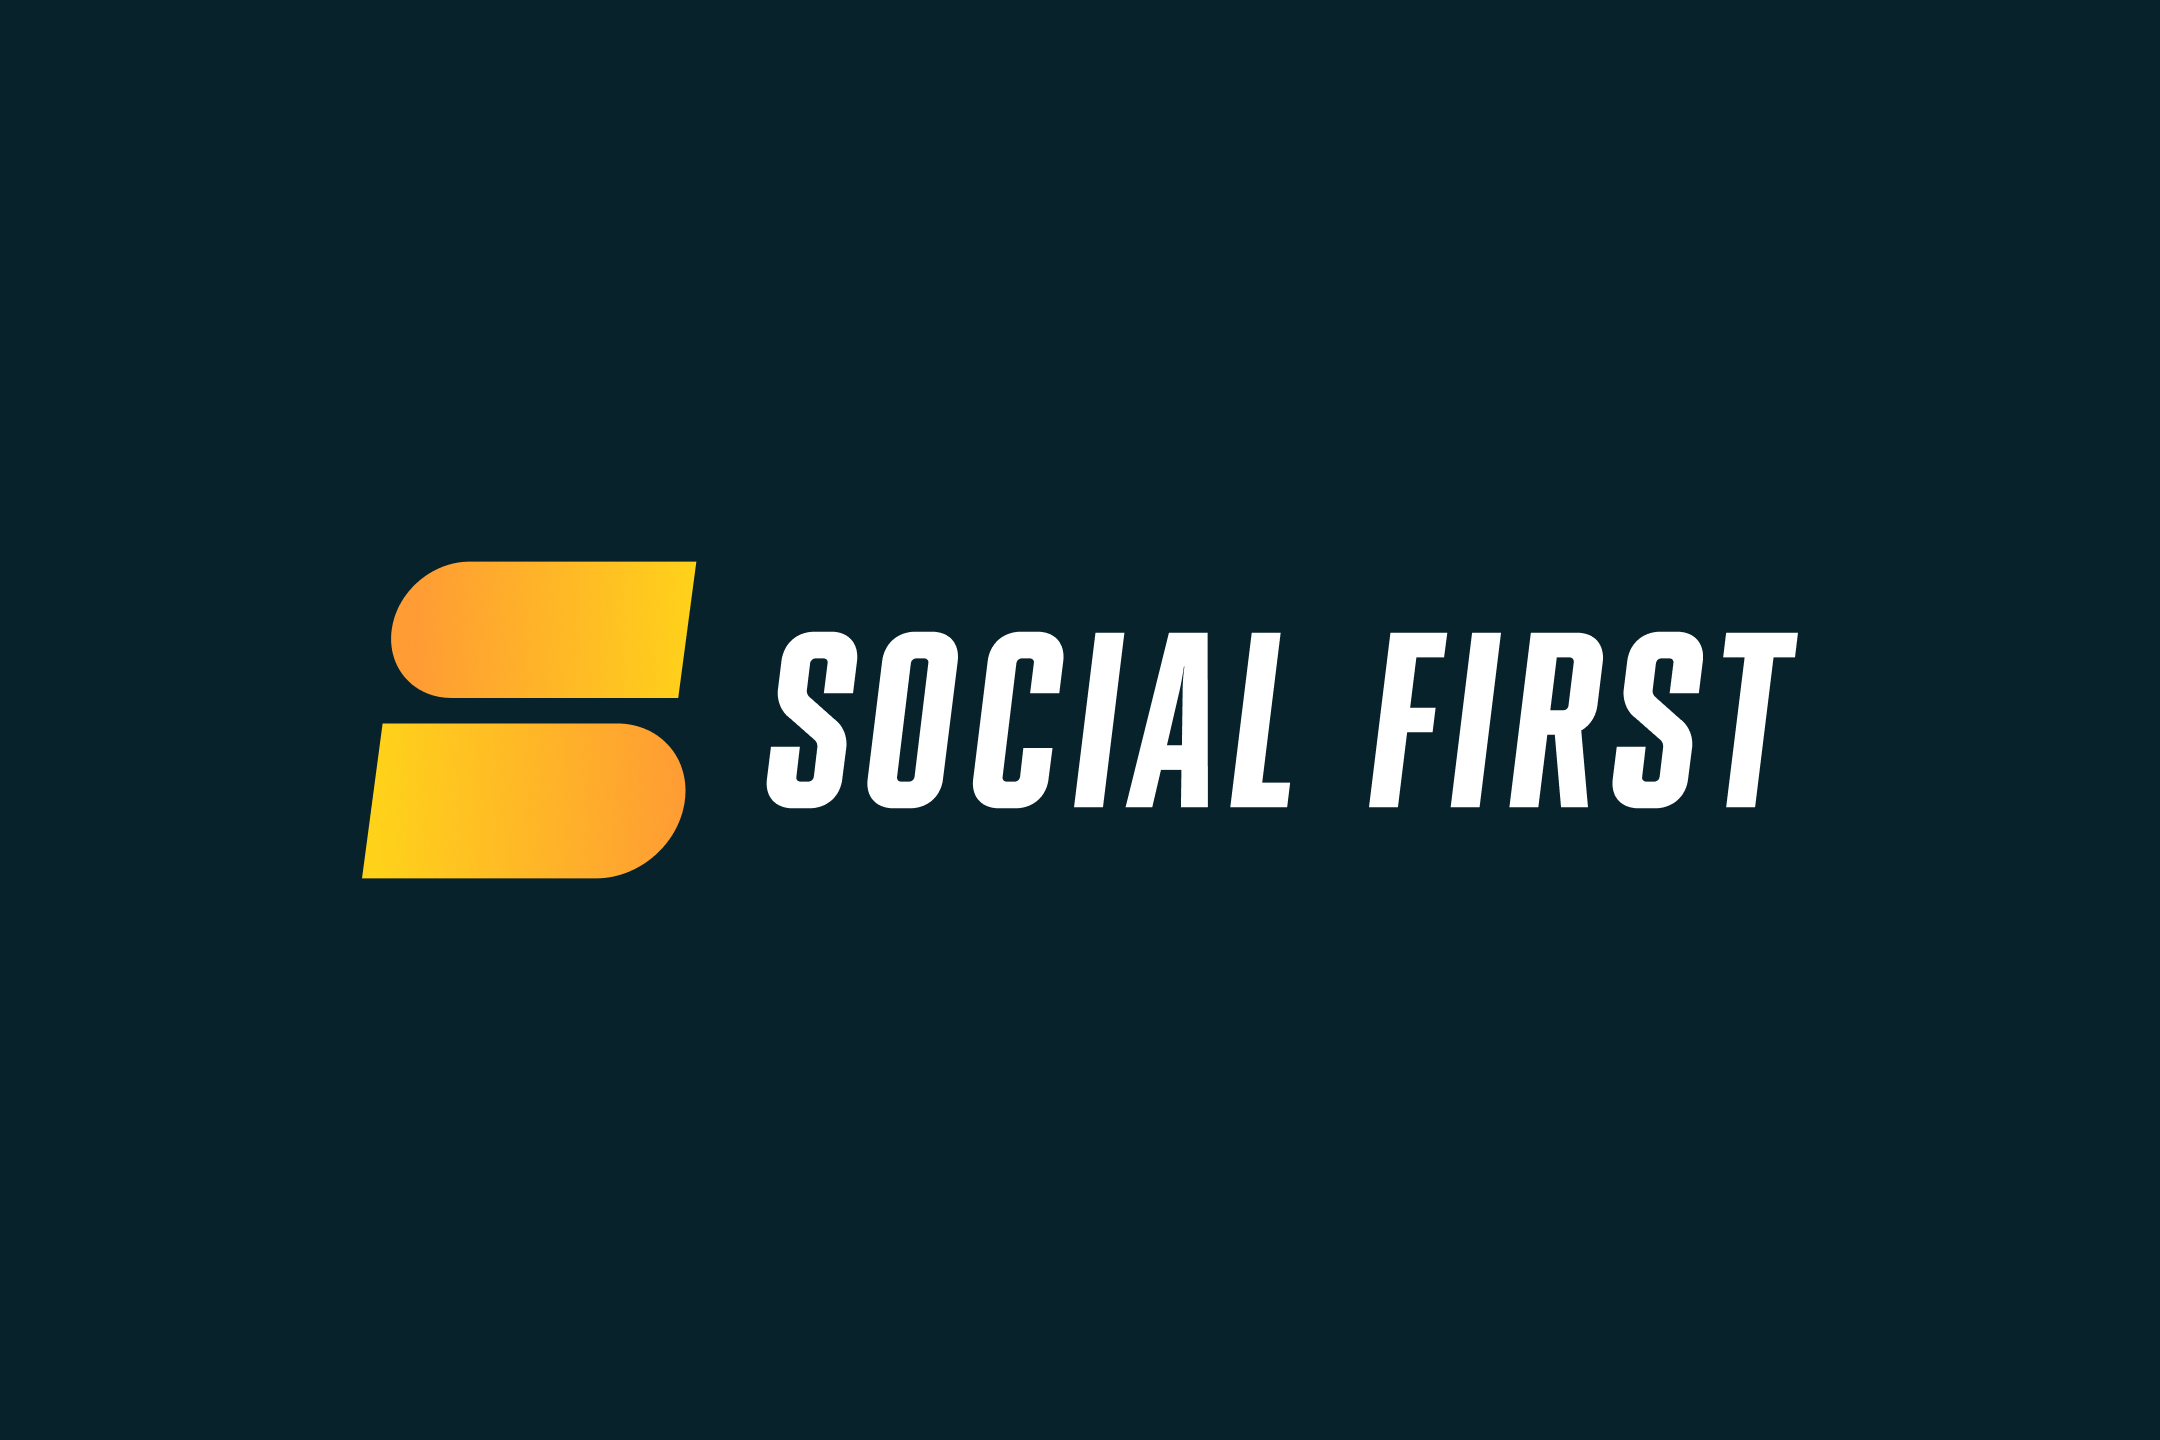 Socialfirst logo